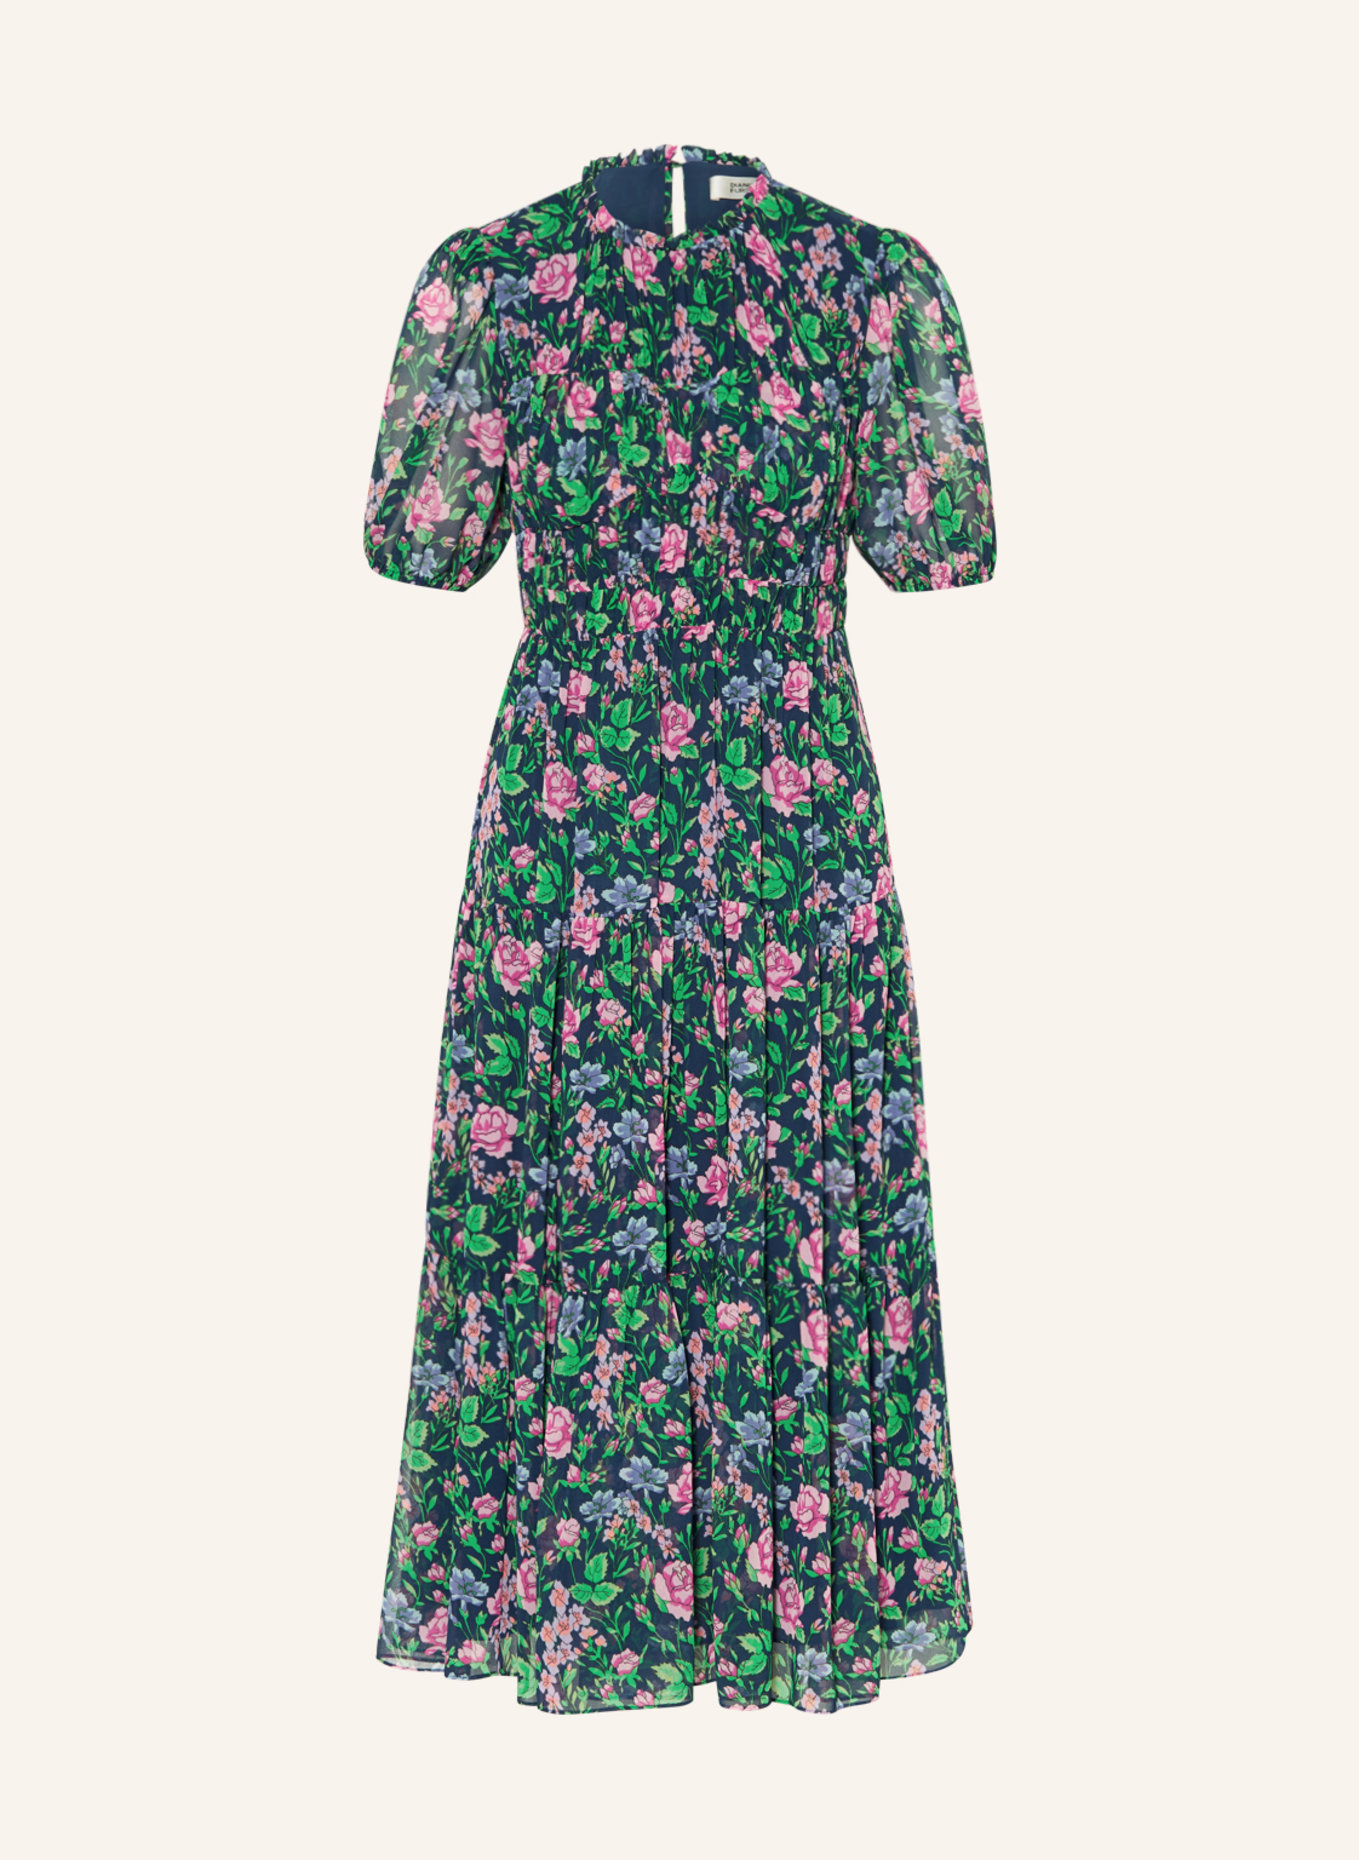 DIANE VON FURSTENBERG Kleid BLOSSOM, Farbe: DUNKELBLAU/ GRÜN/ ROSA (Bild 1)